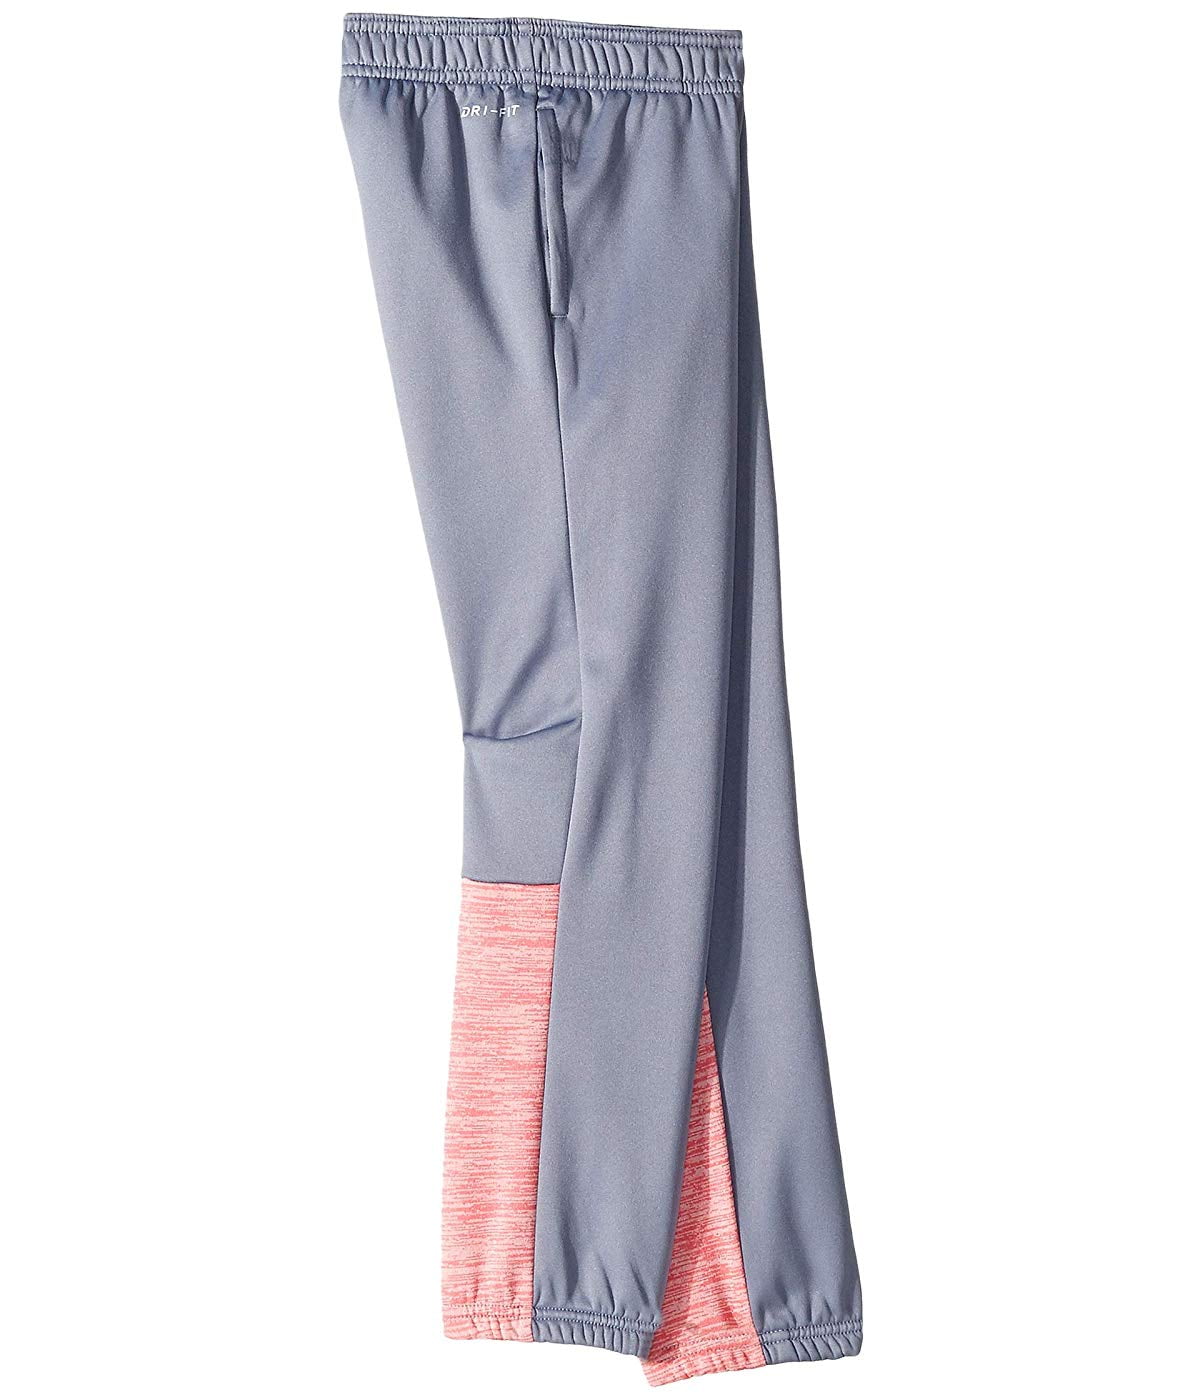 Pink Dri-fit Pants Dry & Therma Athletic Gray Girls Leggings Nike S(5) Sweat